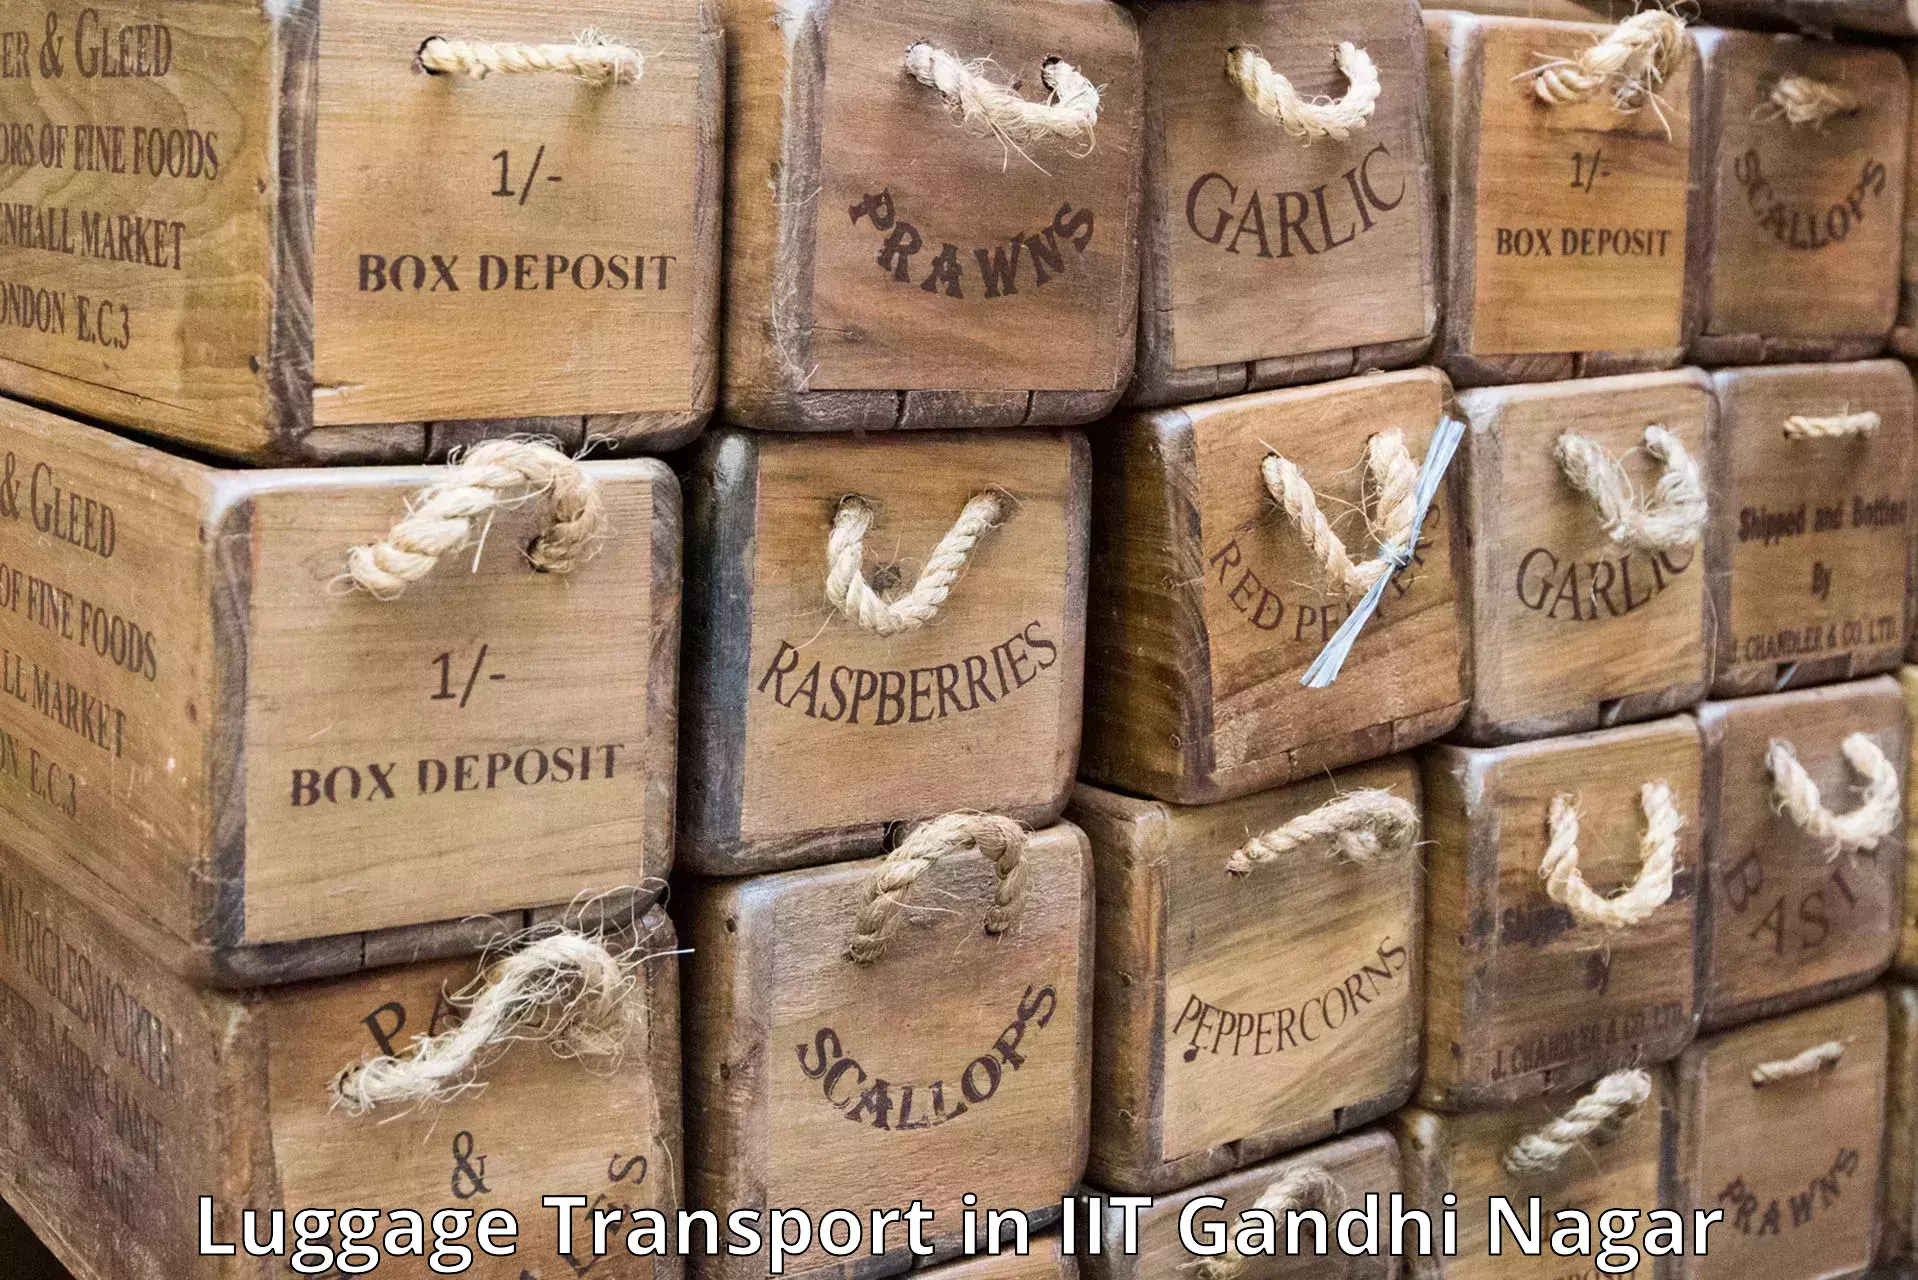 Overnight baggage shipping in IIT Gandhi Nagar